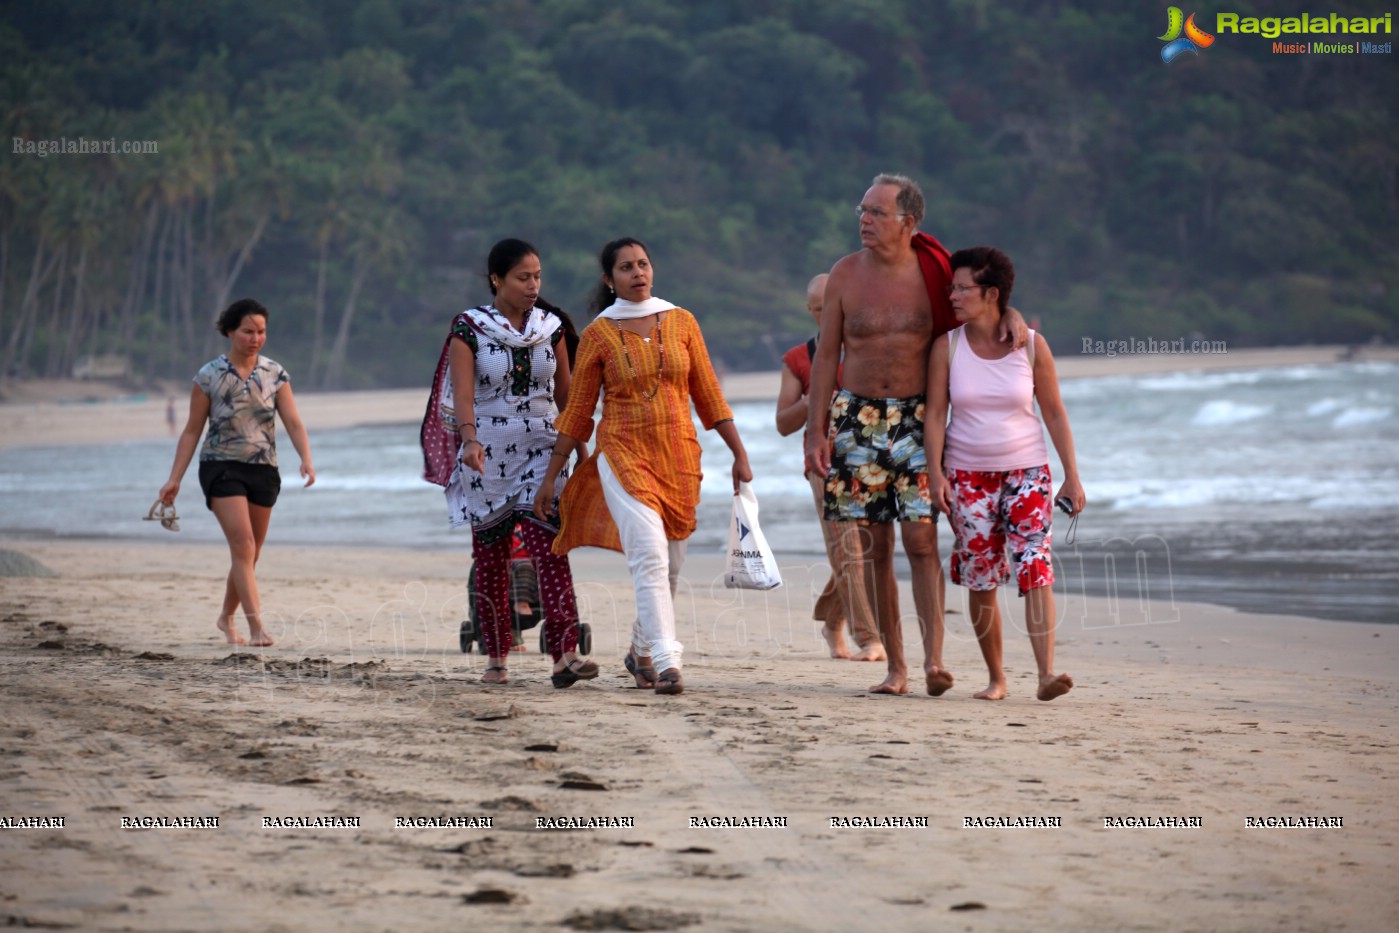 Agonda Beach, Goa